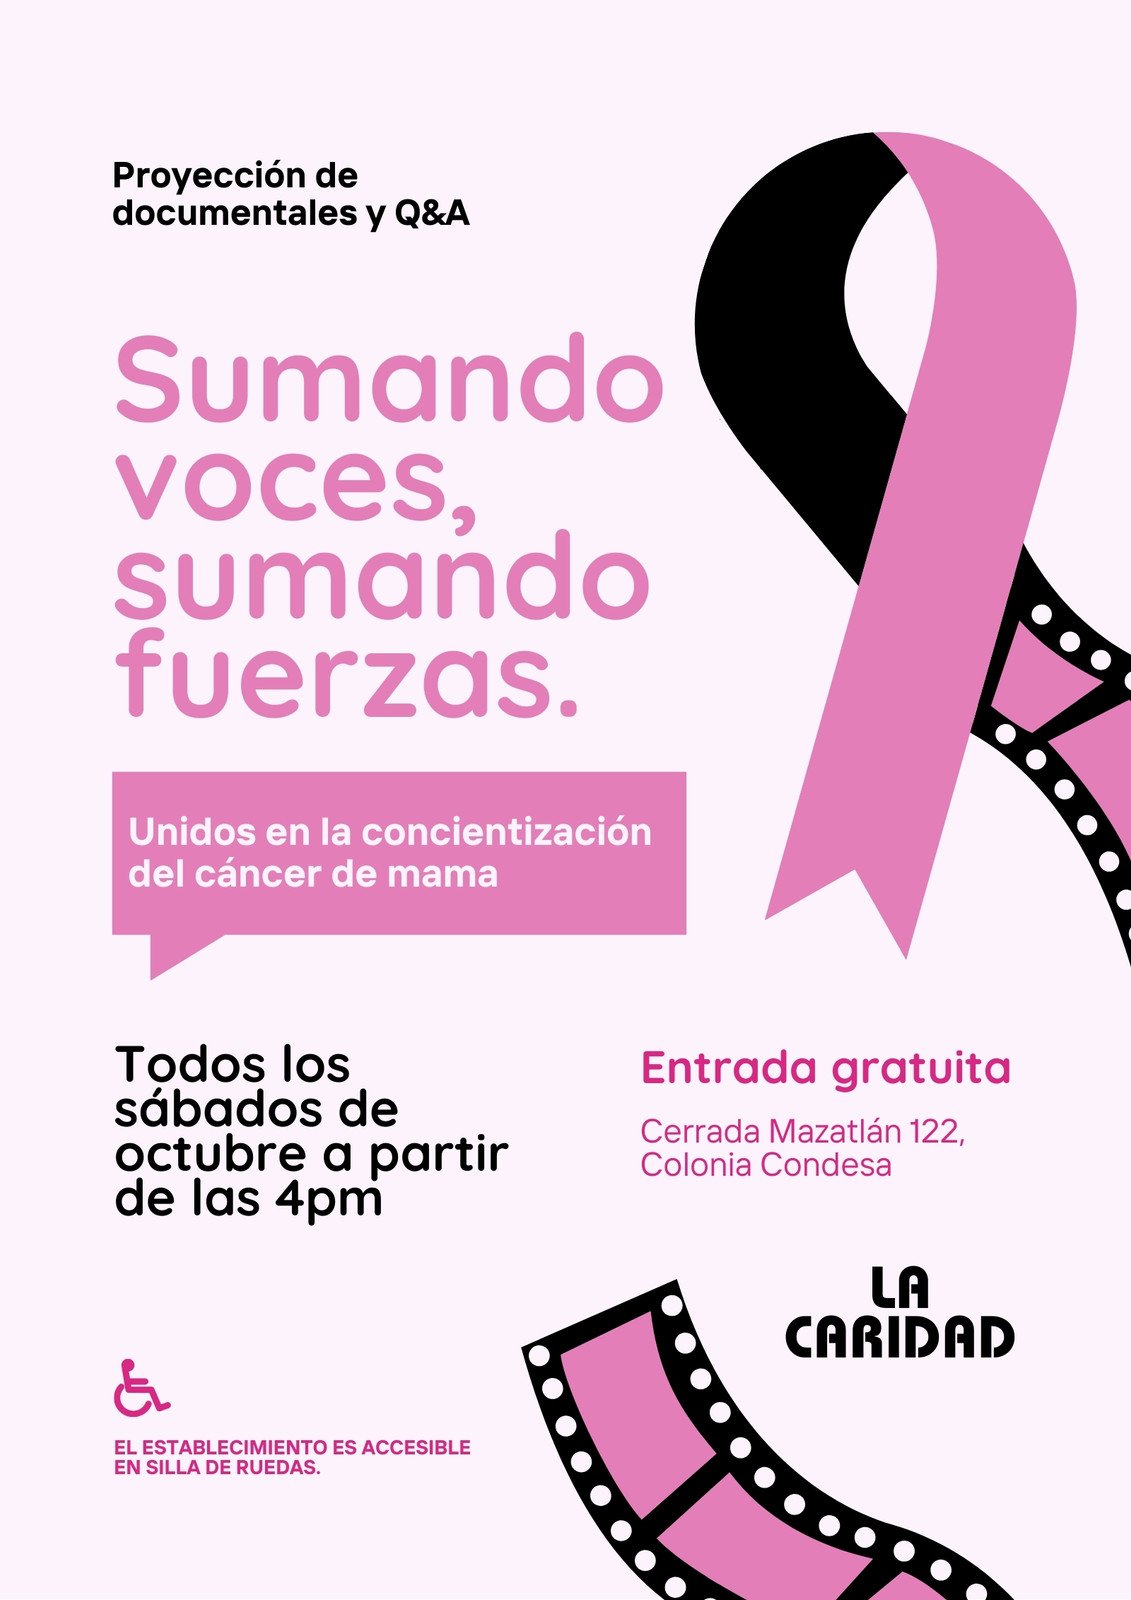 Póster sobre evento concientización cáncer de mama ilustrado vintage rosa claro y negro